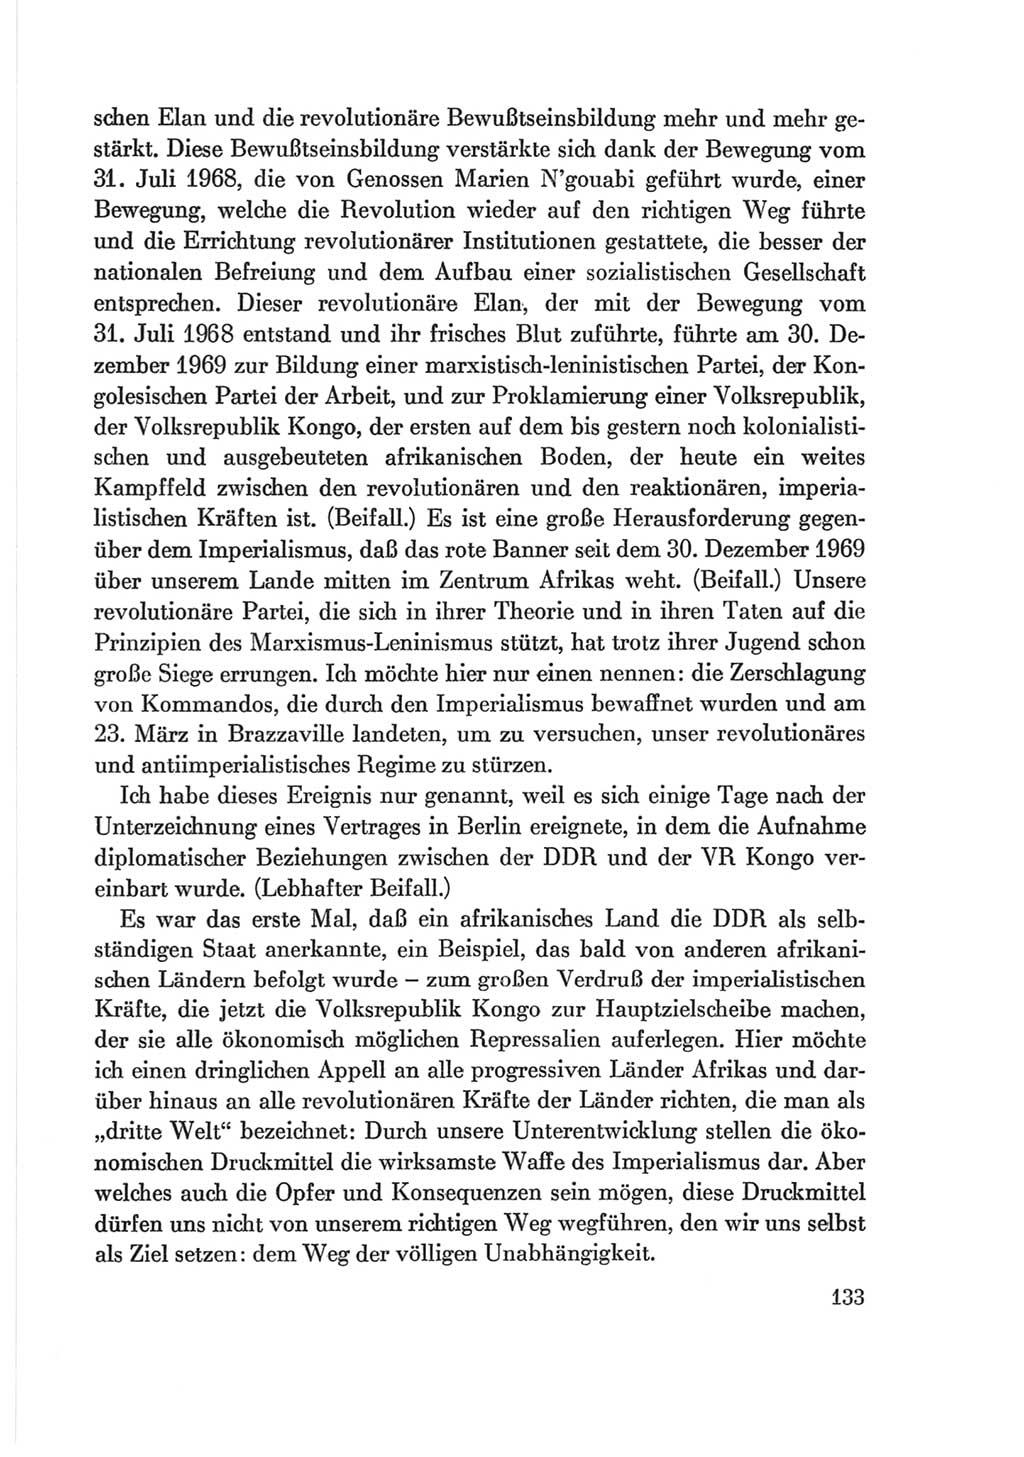 Protokoll der Verhandlungen des Ⅷ. Parteitages der Sozialistischen Einheitspartei Deutschlands (SED) [Deutsche Demokratische Republik (DDR)] 1971, Band 2, Seite 133 (Prot. Verh. Ⅷ. PT SED DDR 1971, Bd. 2, S. 133)